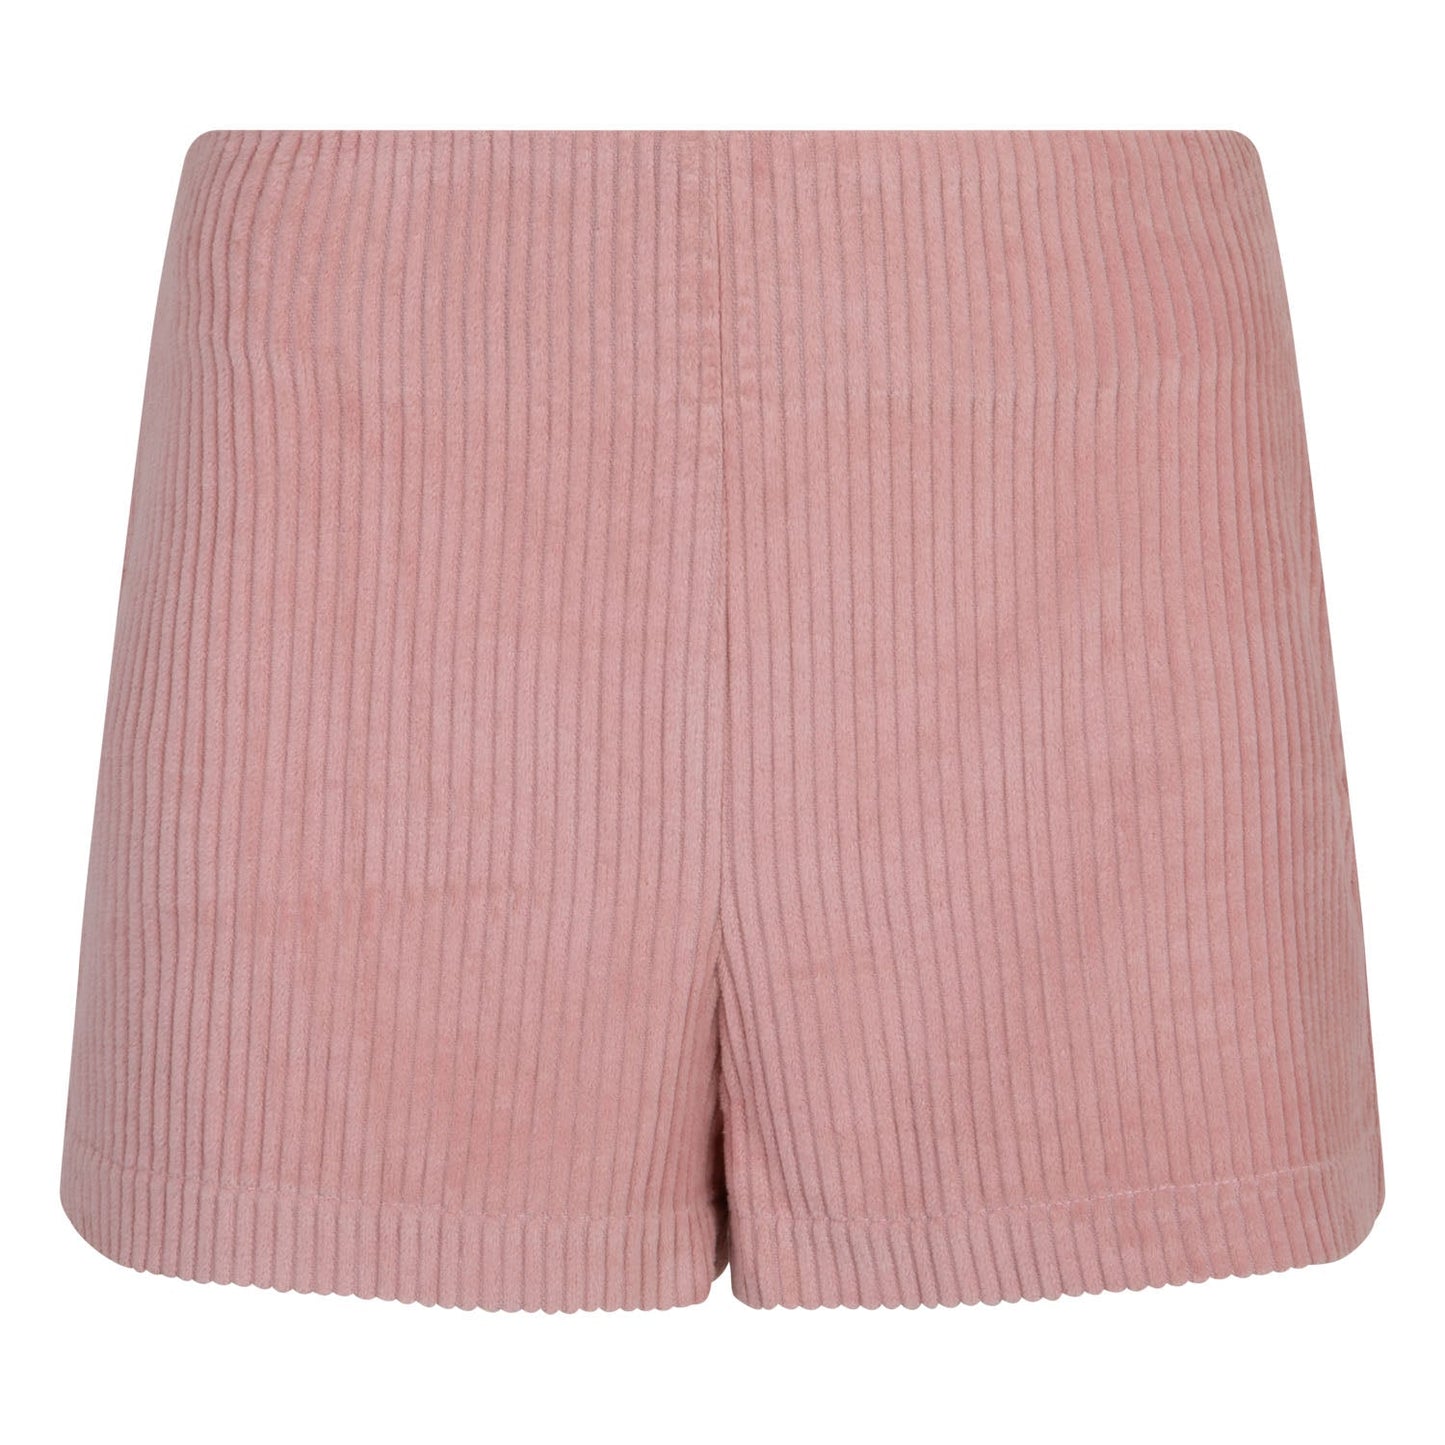 Shorts POPPY "Pink" by Moi Mili